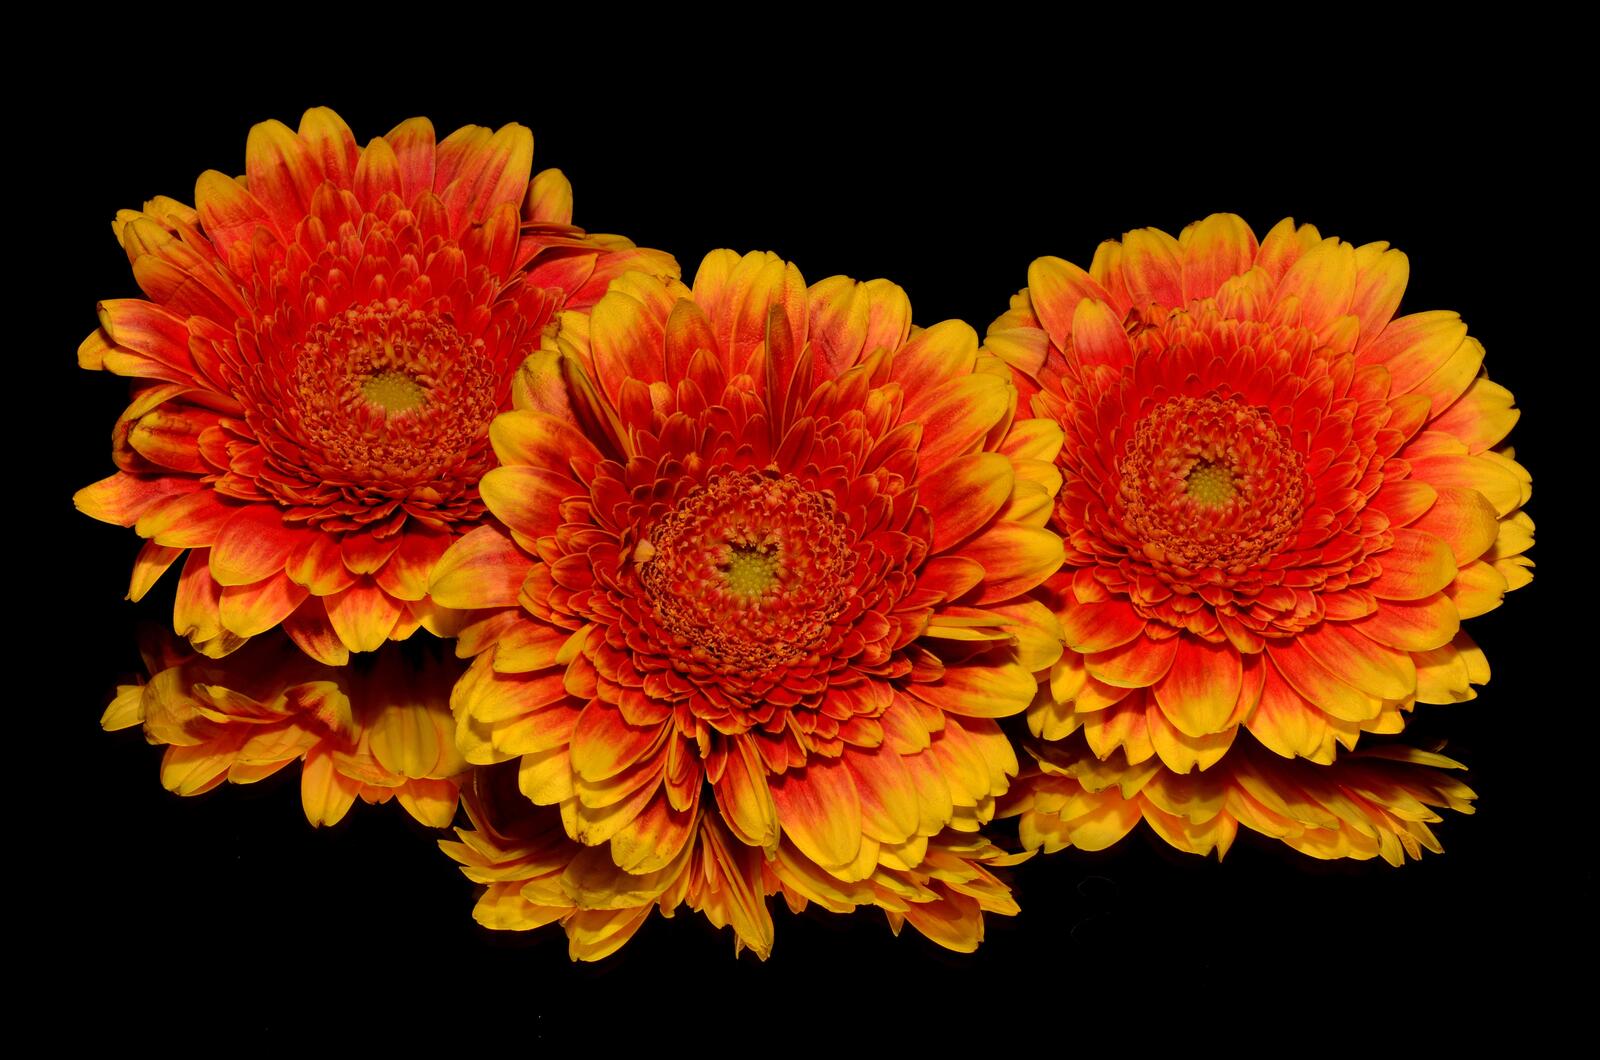 Wallpapers flowering plant orange gerbera on the desktop